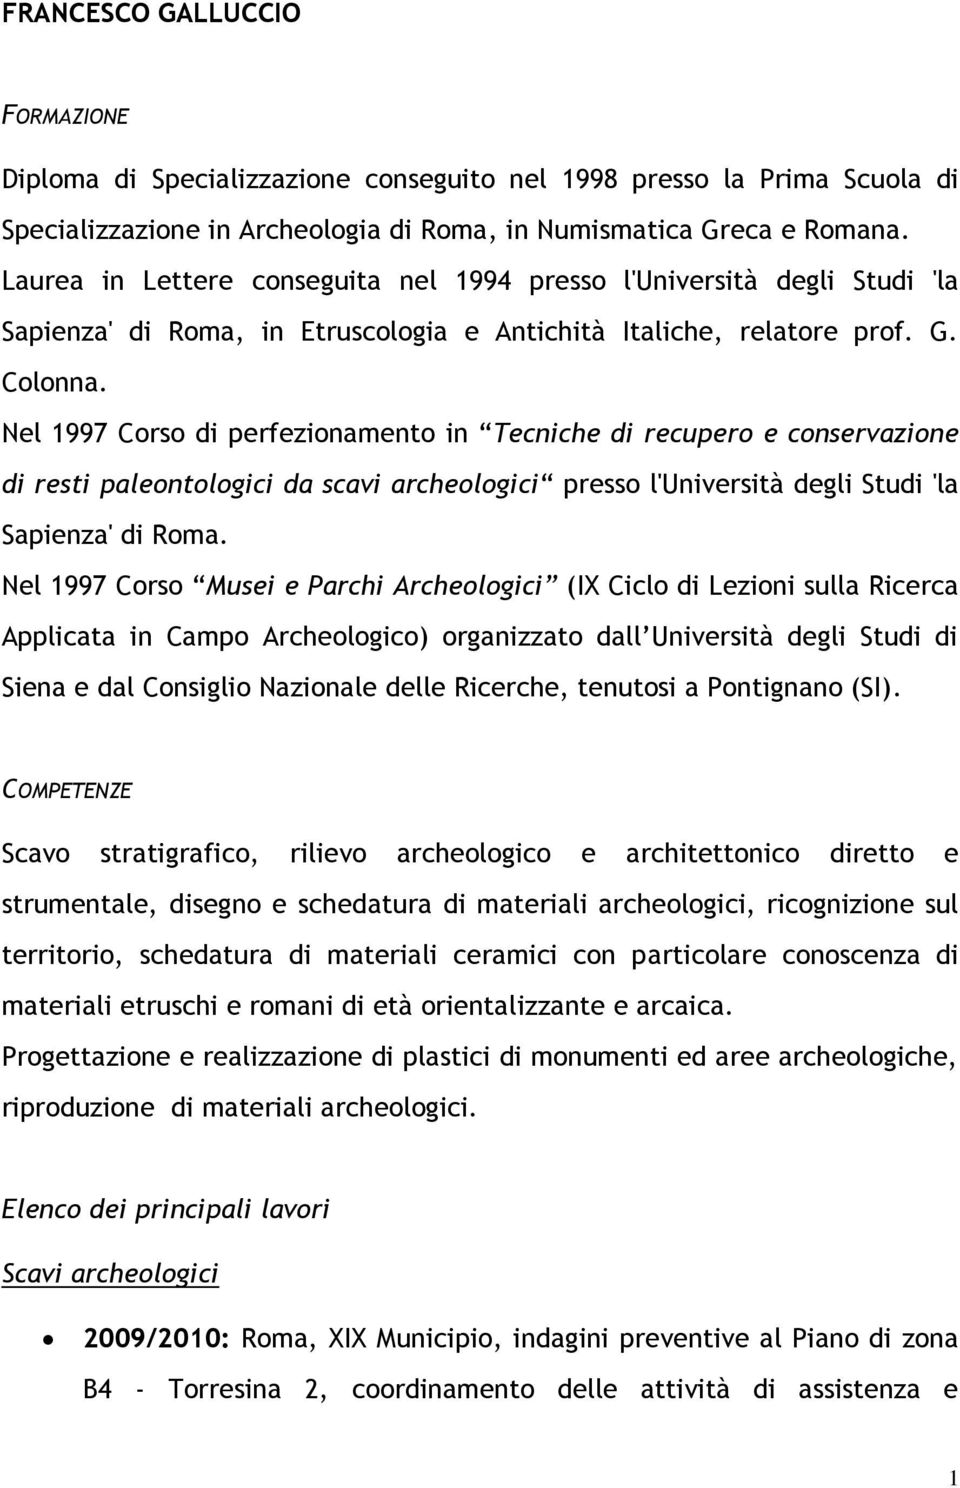 Nel 1997 Corso di perfezionamento in Tecniche di recupero e conservazione di resti paleontologici da scavi archeologici presso l'università degli Studi 'la Sapienza' di Roma.